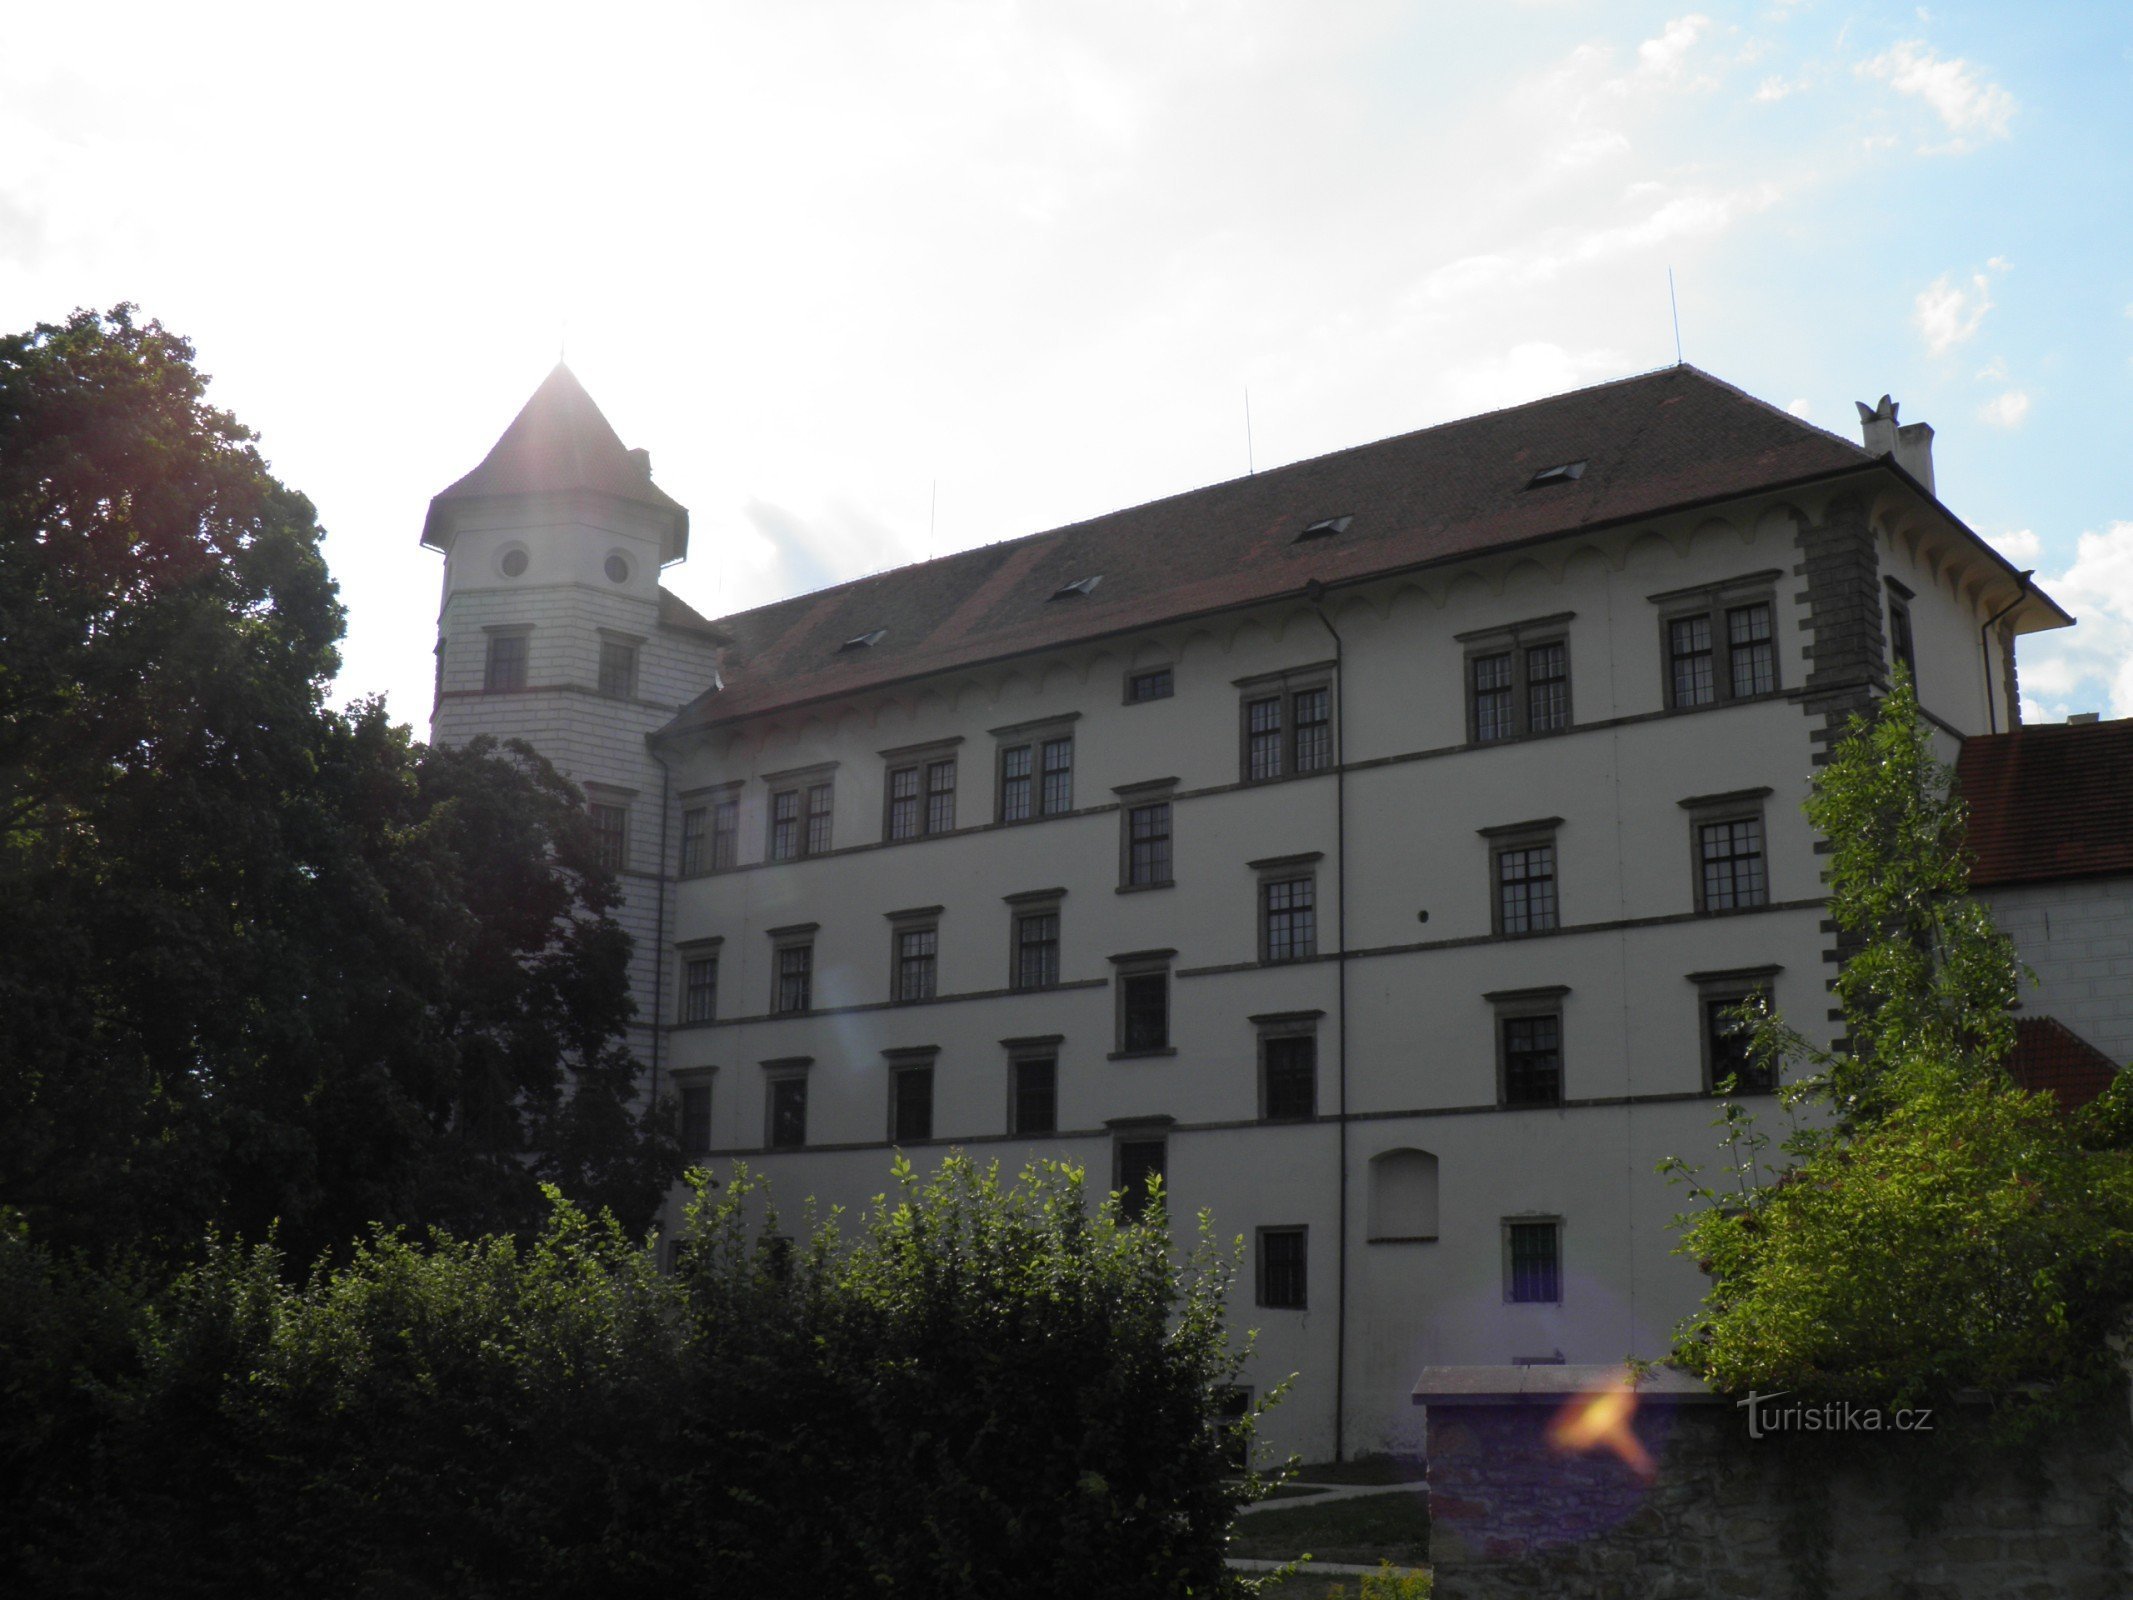 Žirovnice - Stadt und Burg.